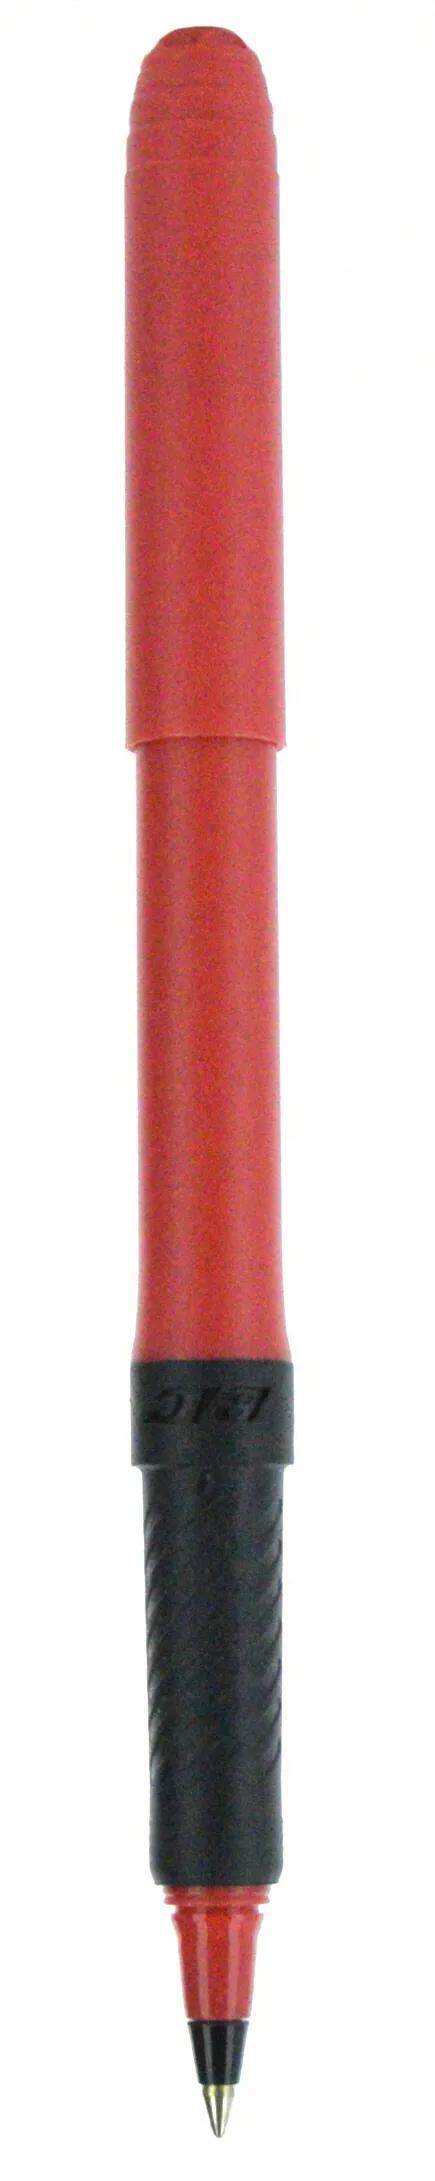 BIC® Grip Roller Pen 65 of 147